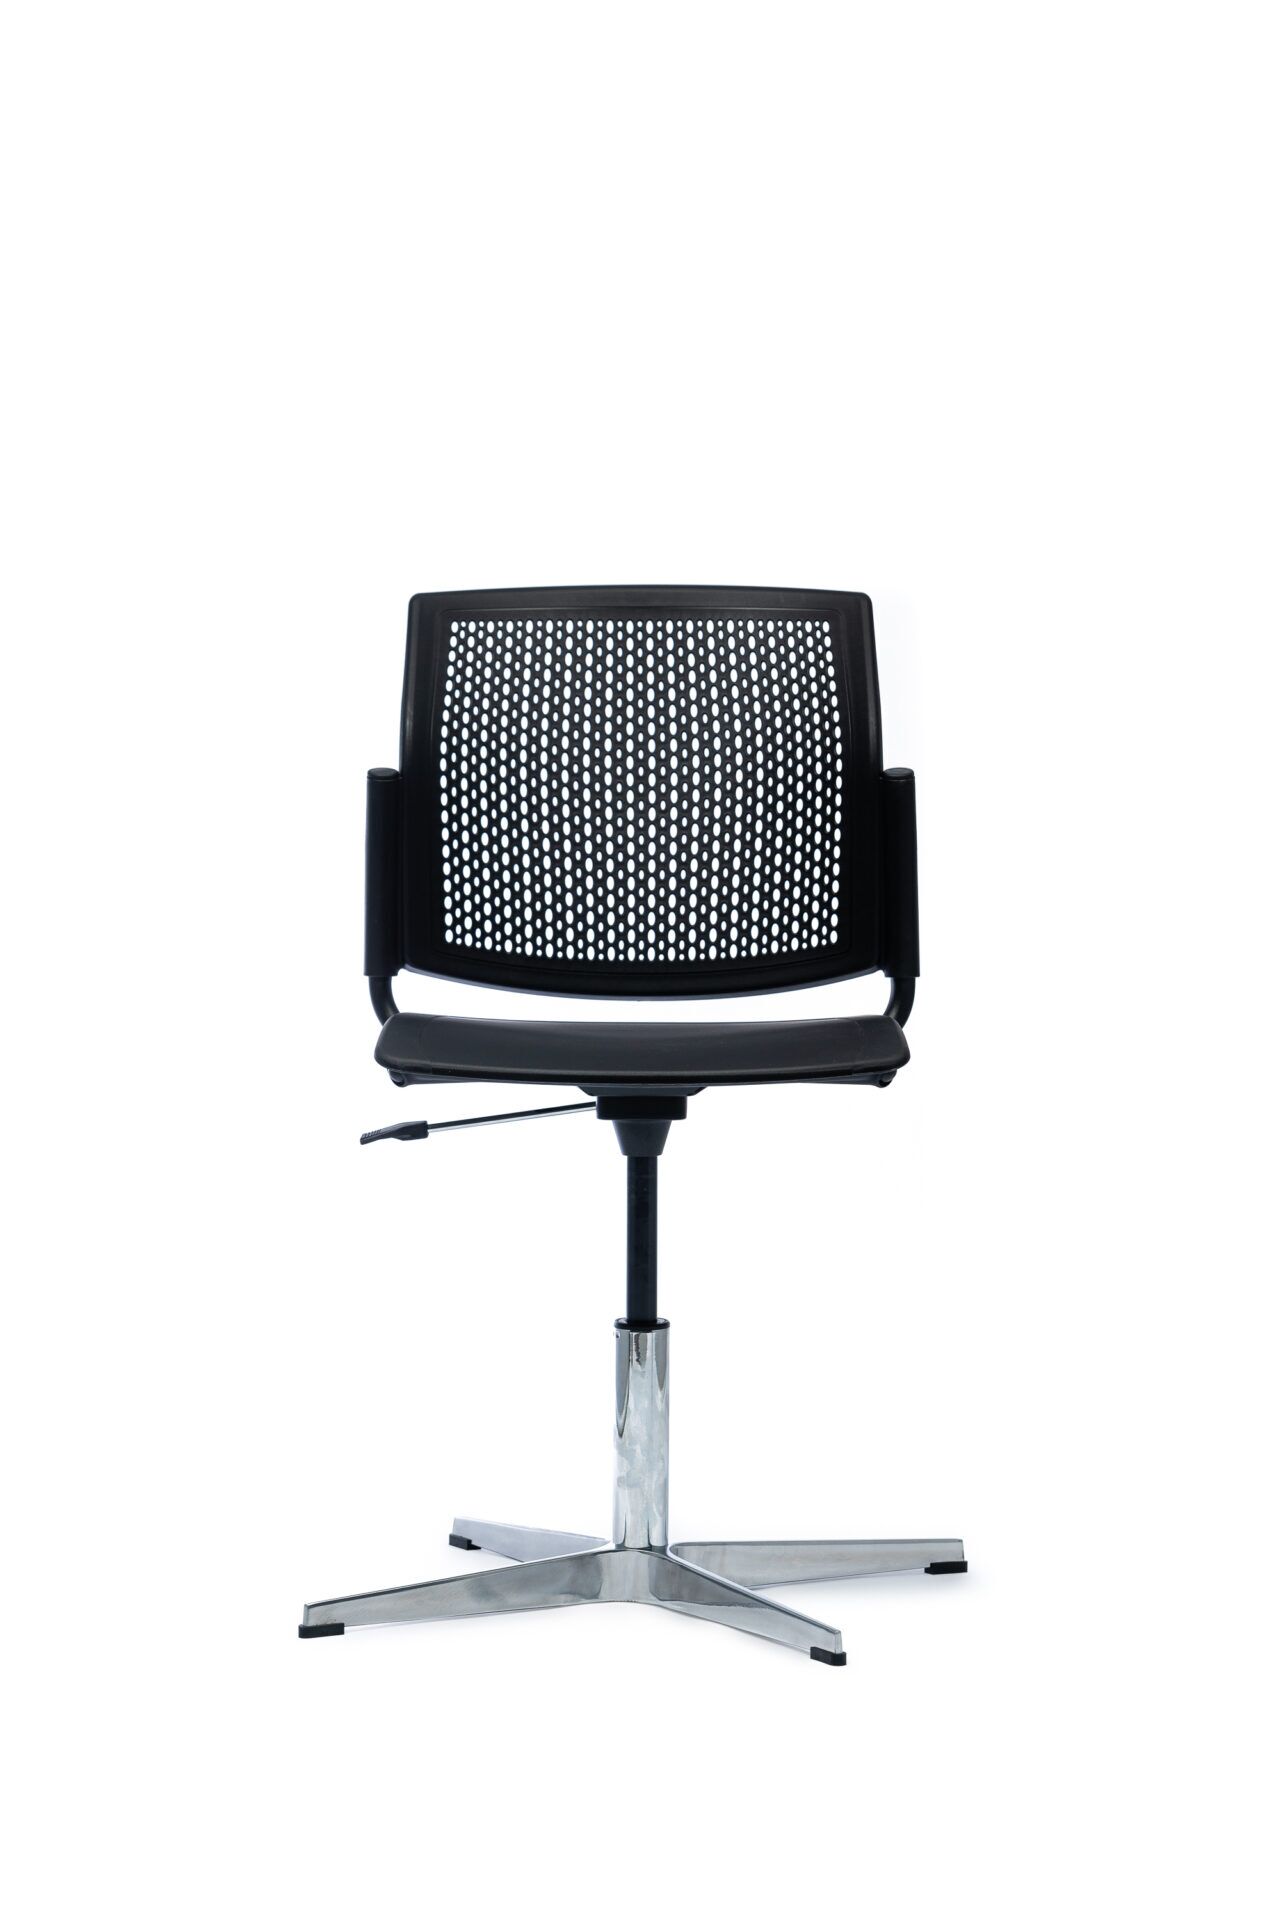 Czarny ażurowy fotel biurowy od przodu 4job BGroup